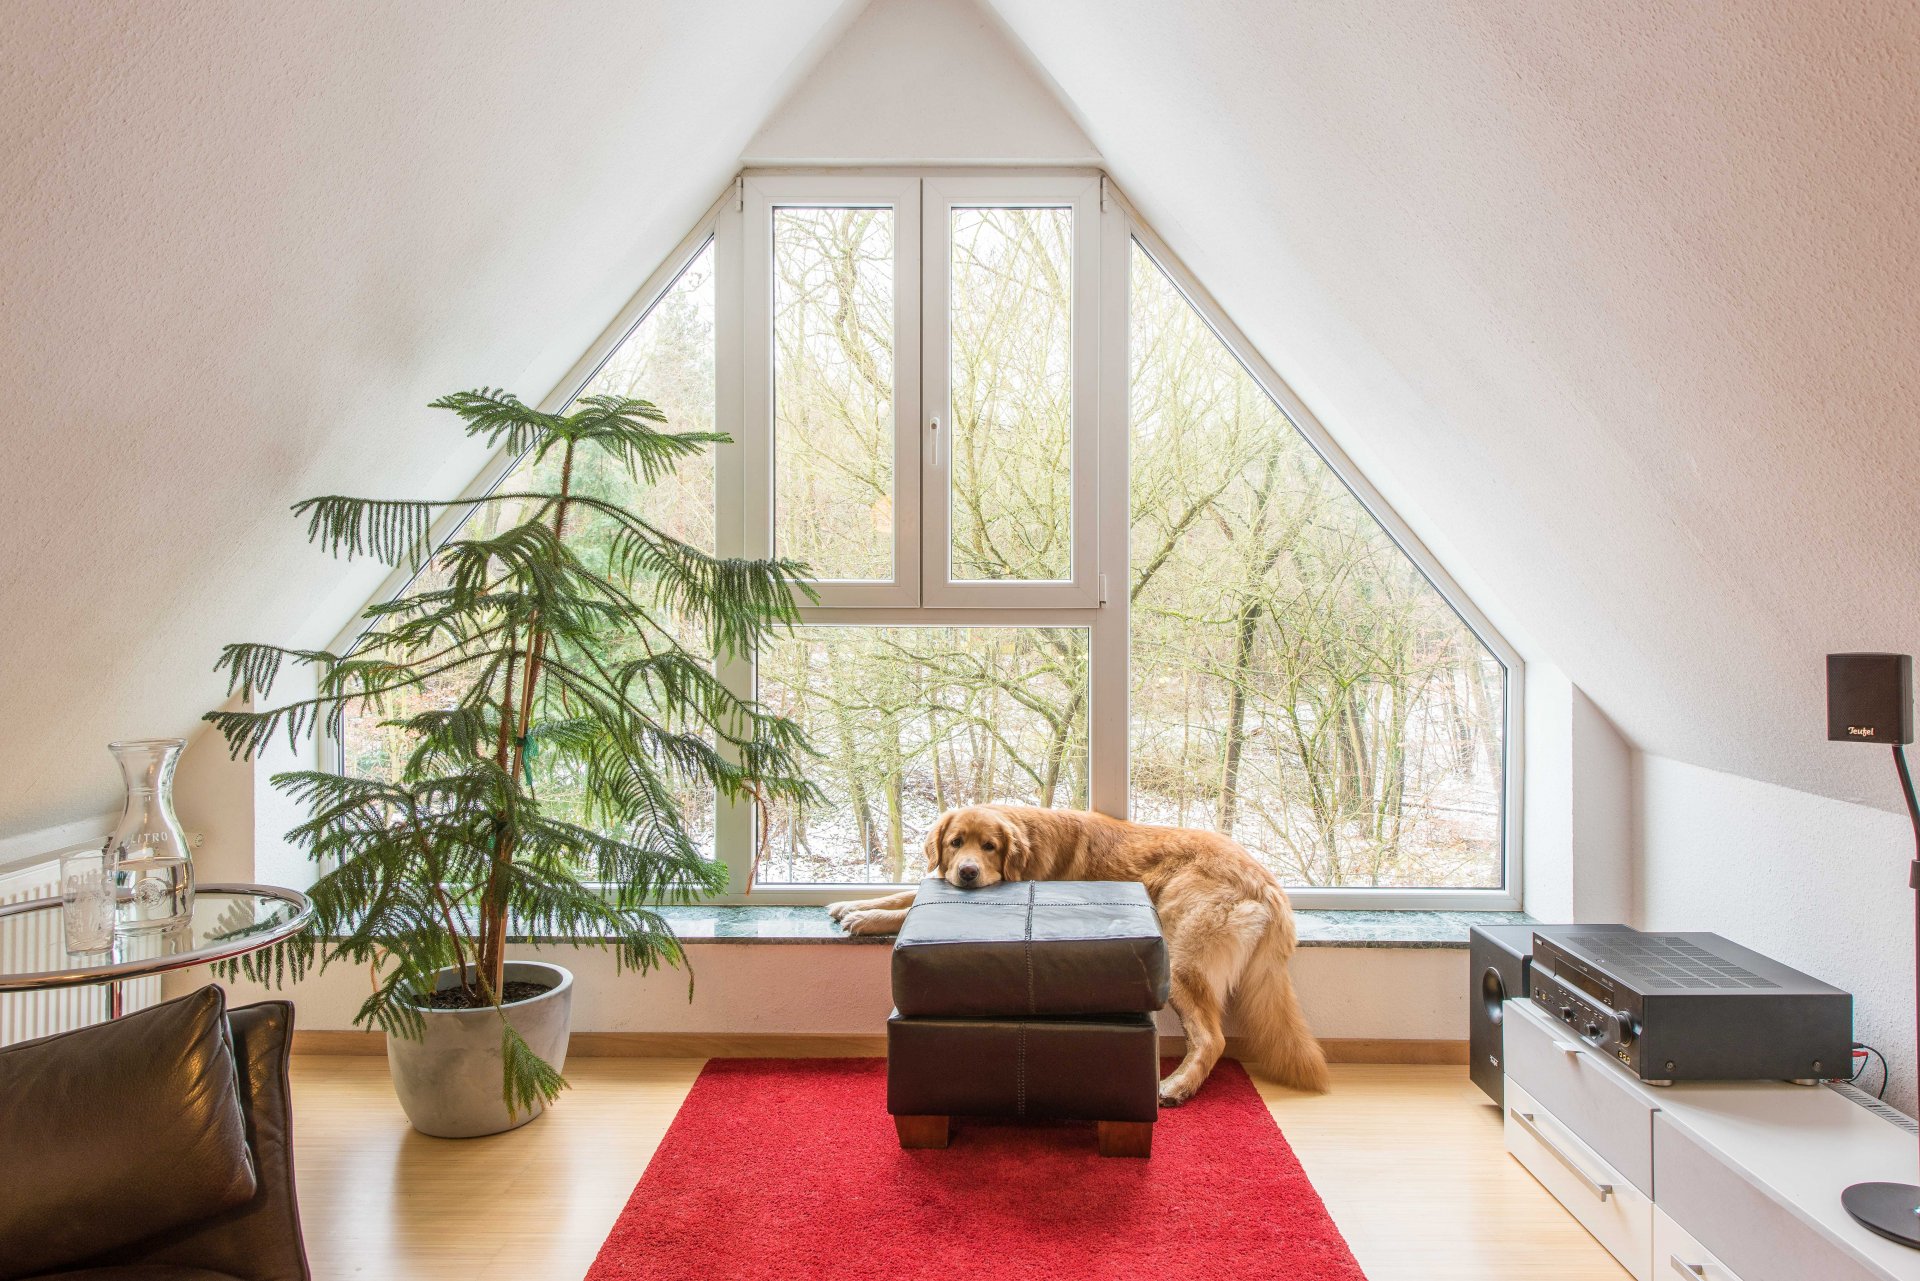 Bodentiefes, deckenhohes Südfenster... Aussichtsplatz für den gefürchteten, schrecklichen Kettenhund (der Hund ist unverkäuflich) - Oliver Reifferscheid - Immobilienmakler Darmstadt